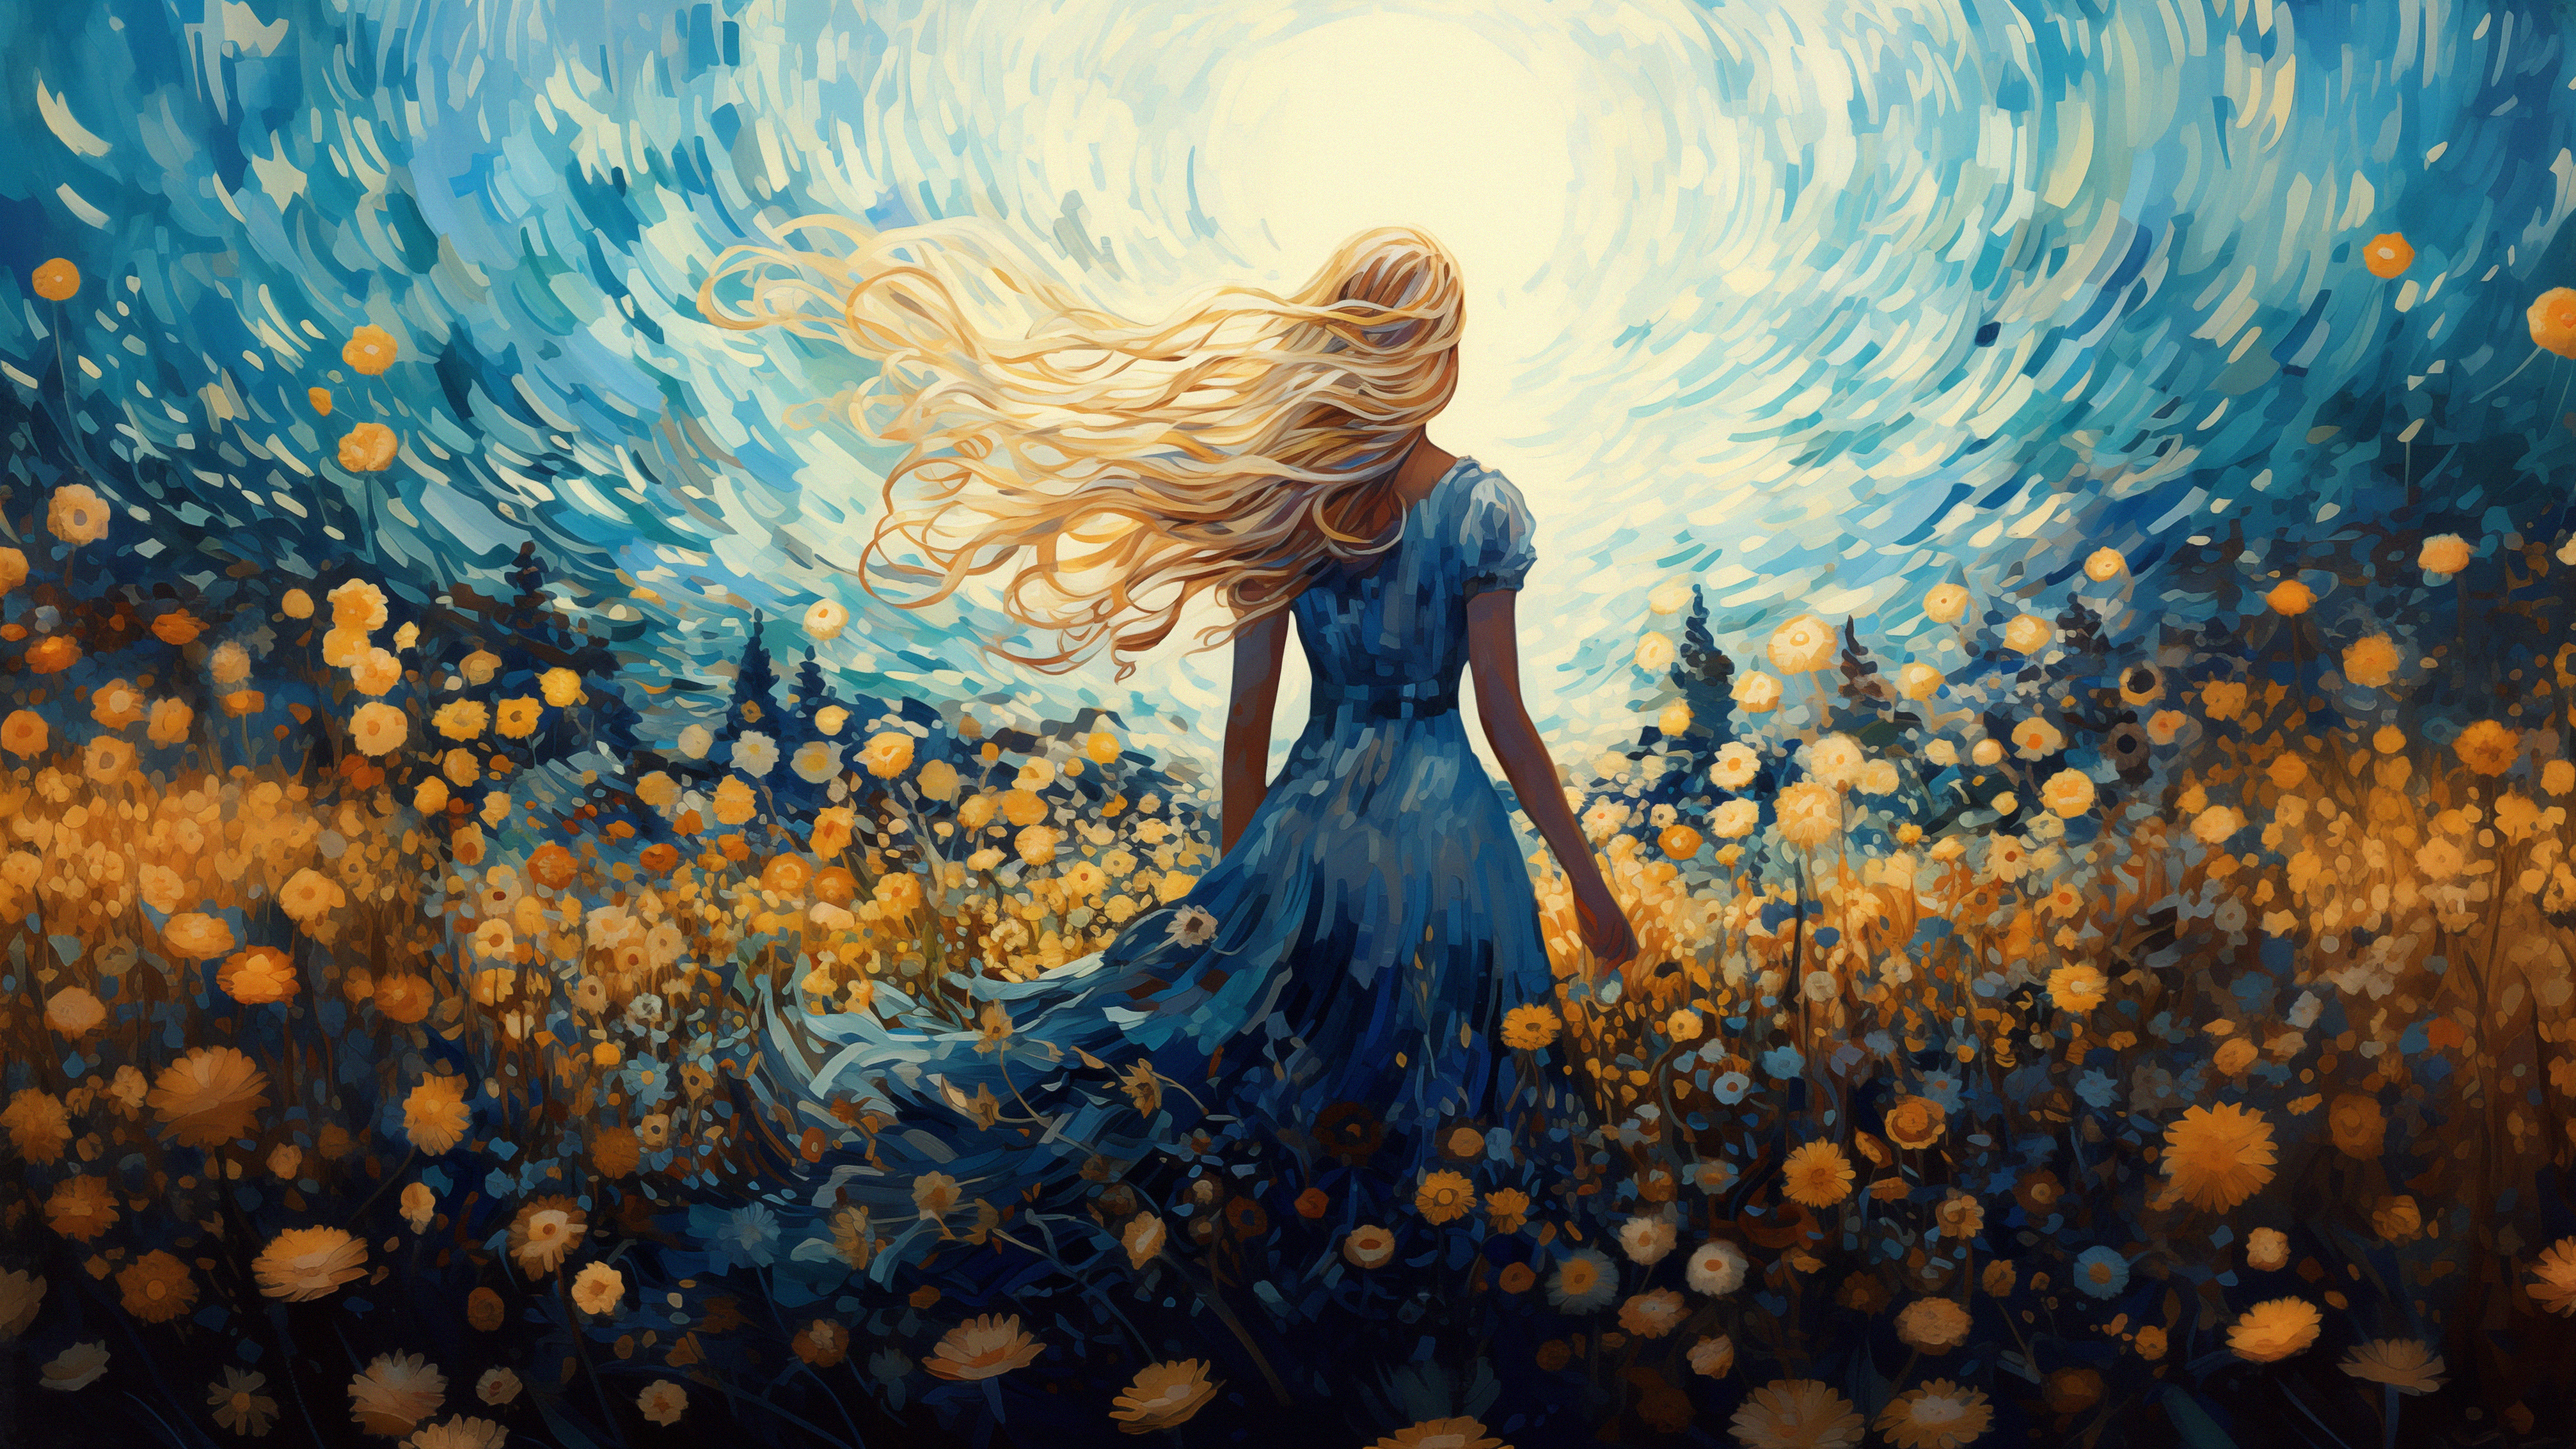 General 3840x2160 women AI art blonde blue dress long hair field dress digital art flowers hair blowing in the wind wind trees sky